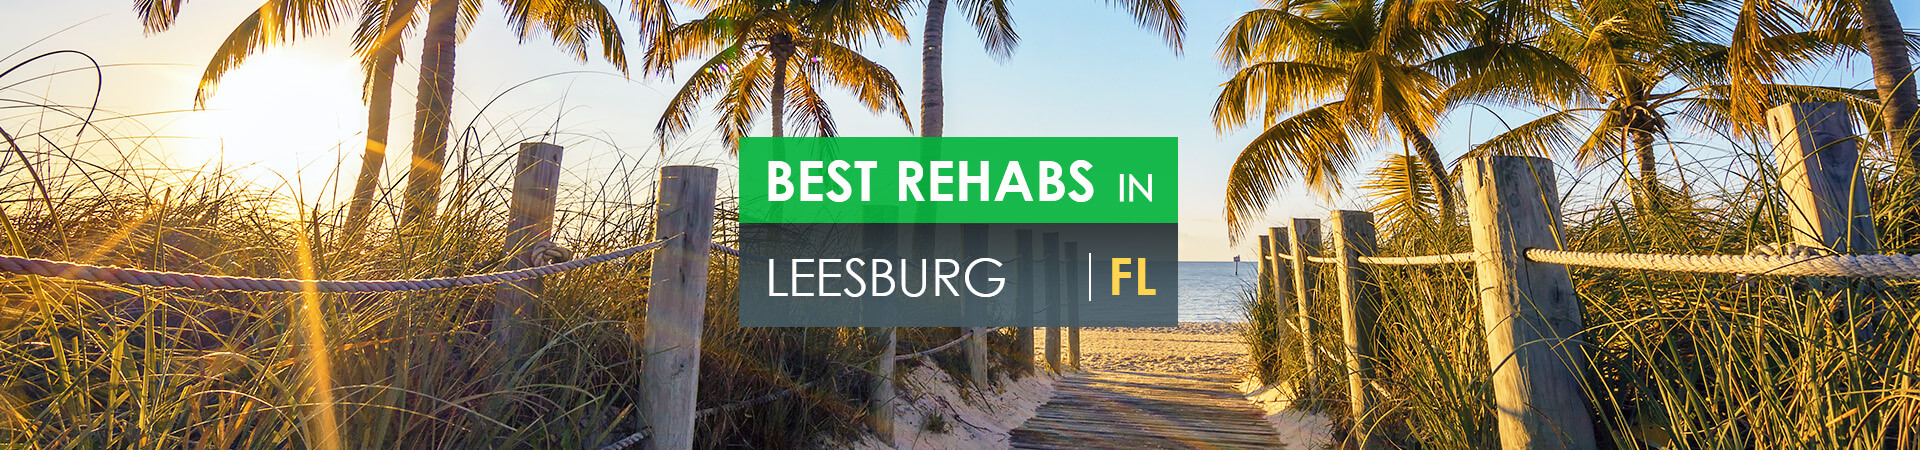 Best rehabs in Leesburg, FL